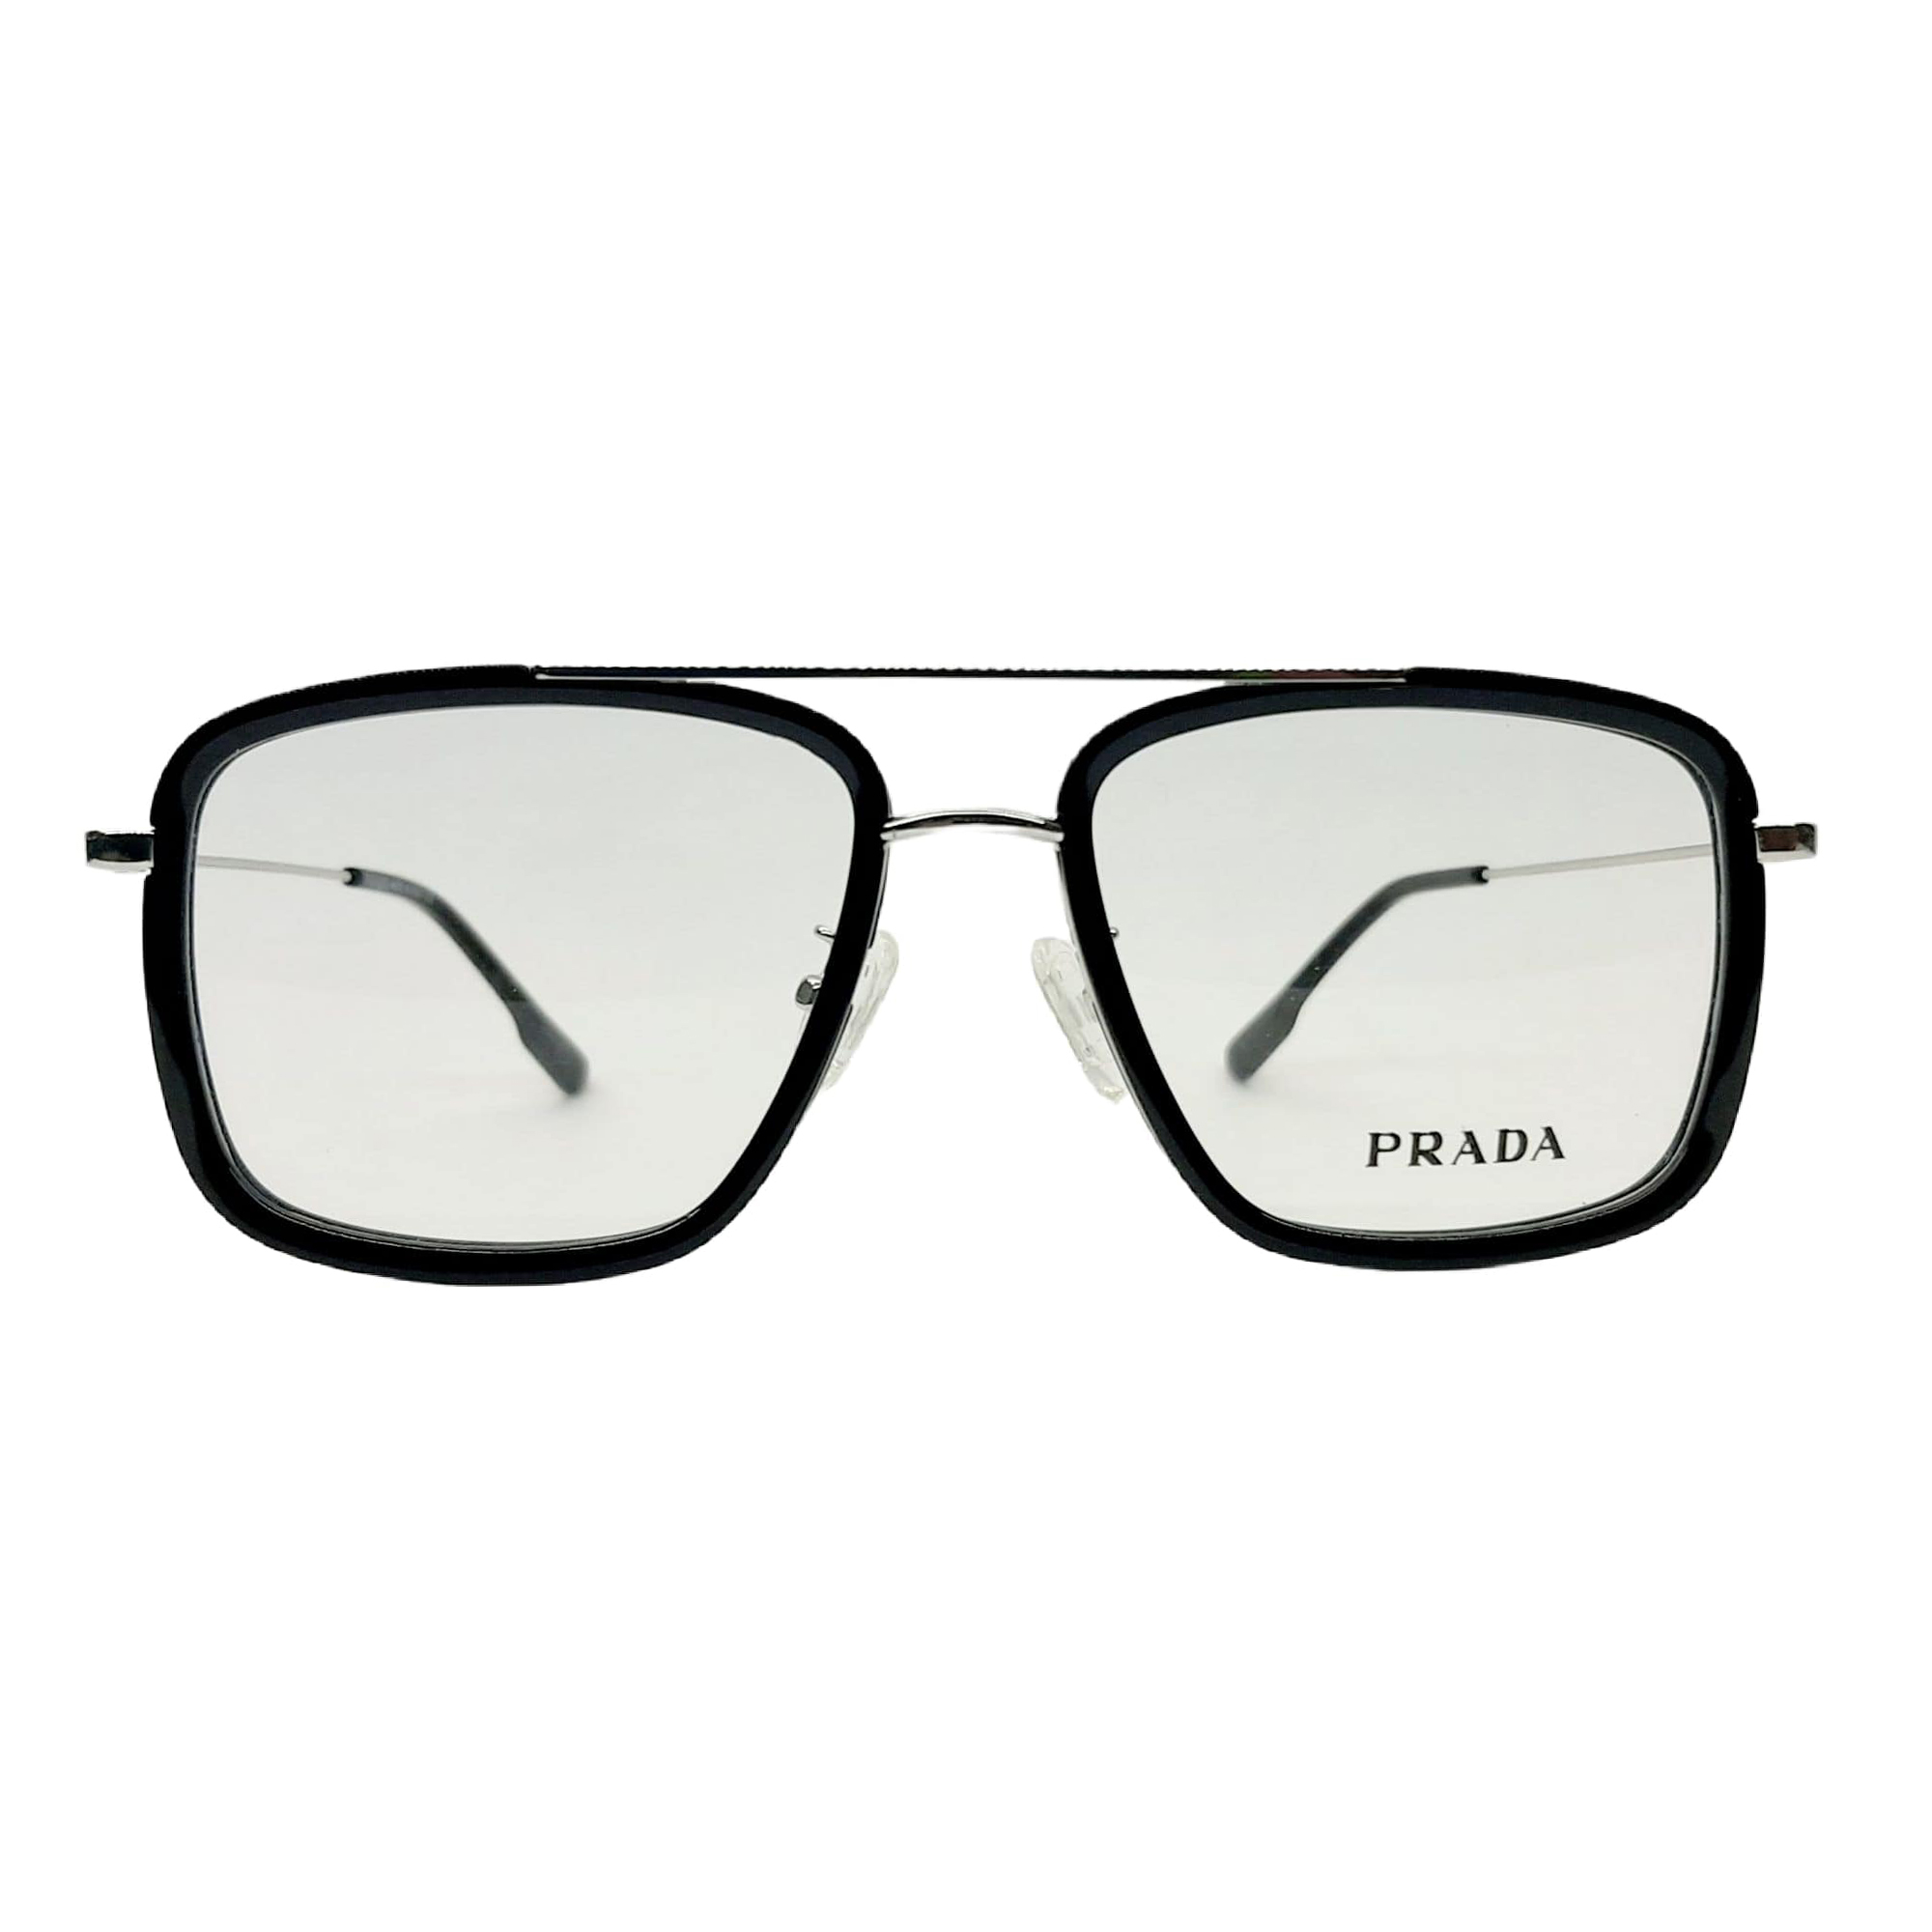 فریم عینک طبی پرادا مدل P230717